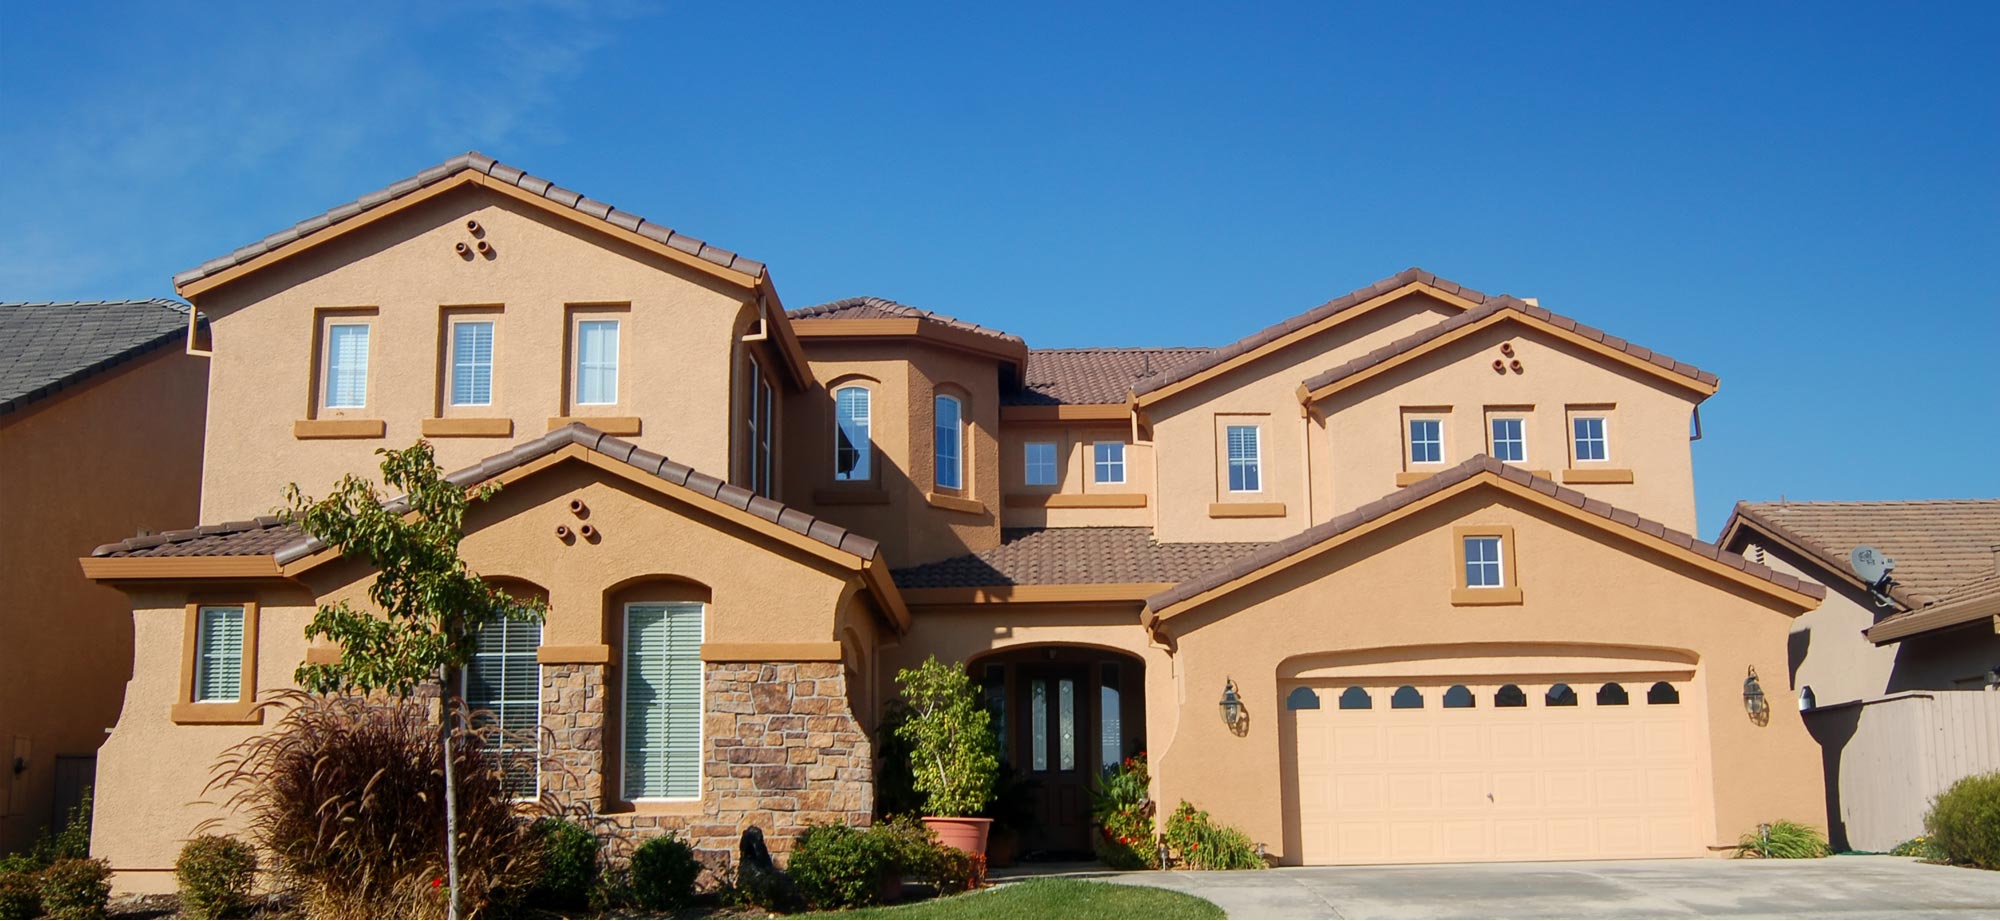 El Paso Area Homes for Rent, Houses for Rent in El Paso Area Texas, El